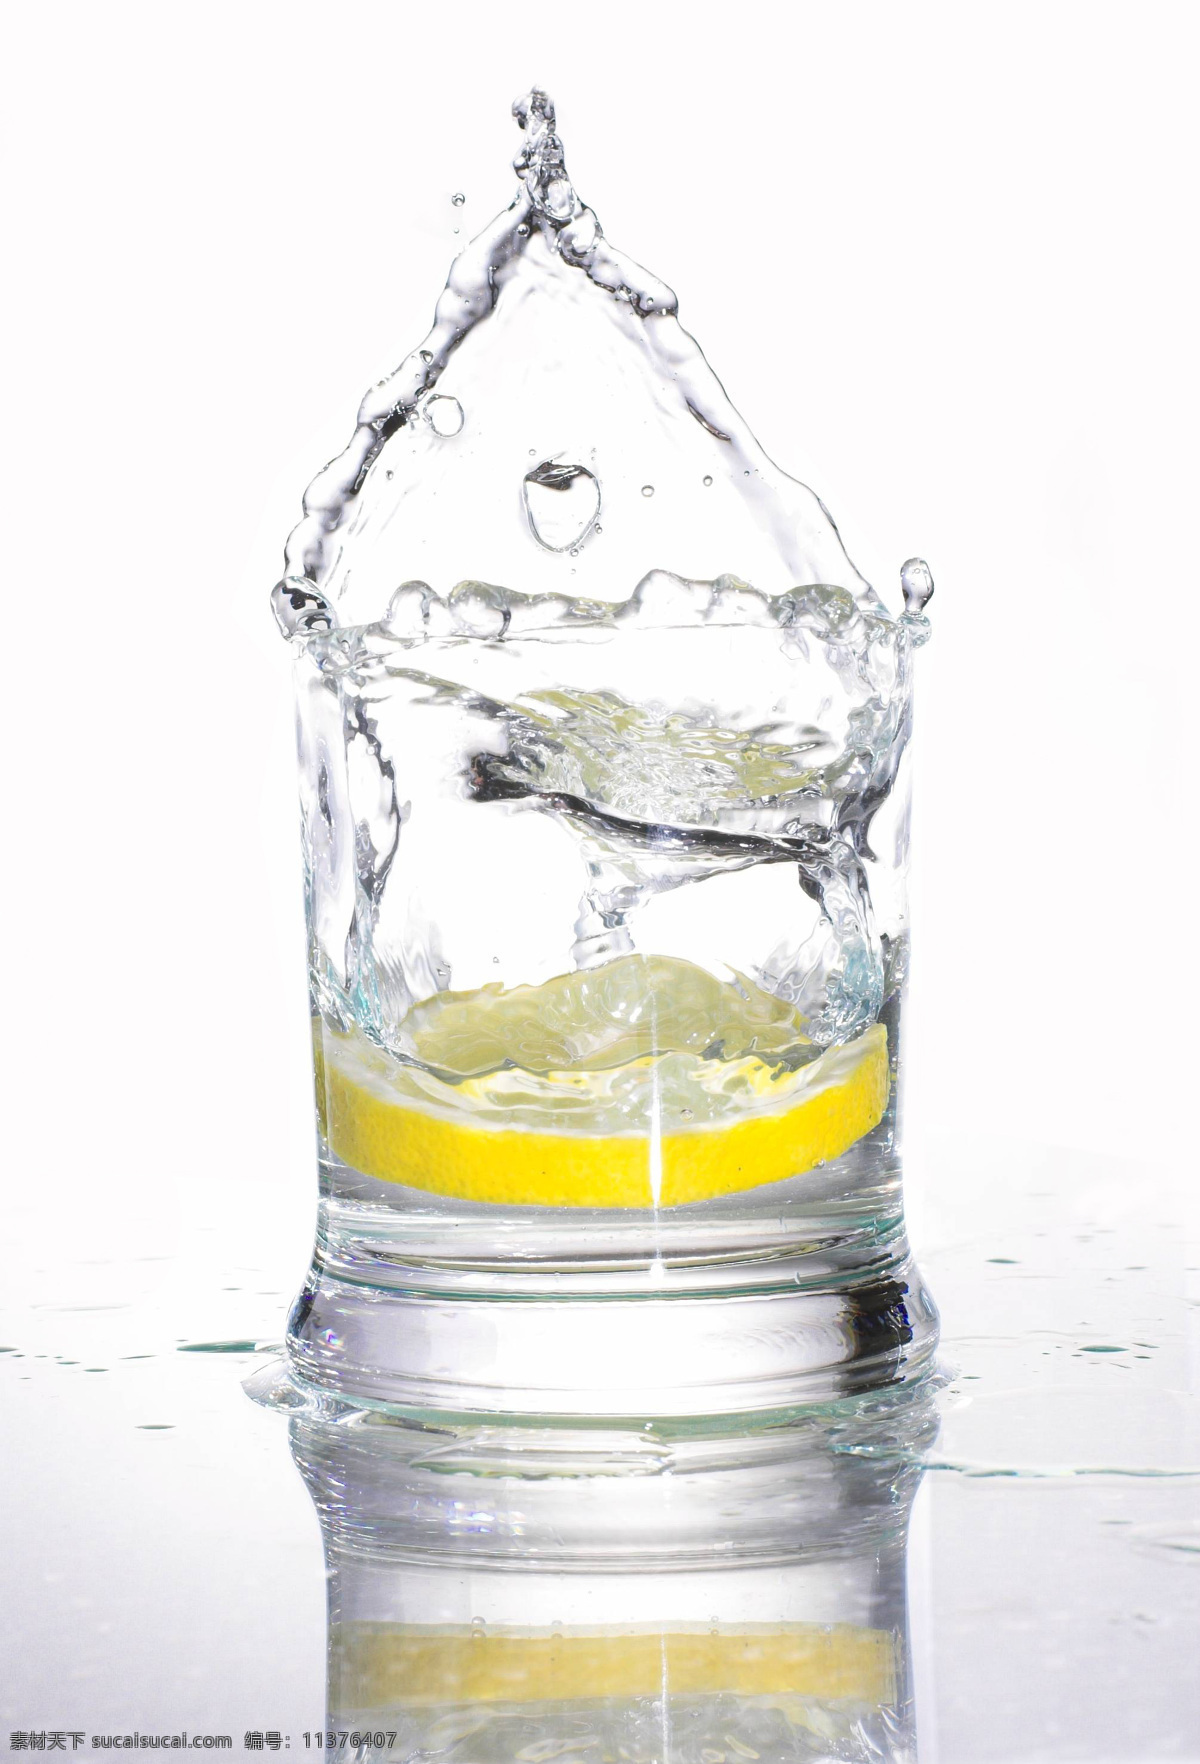 清水 柠檬 酒水饮料 玻璃杯 杯子 动感水花 水果 酒类图片 餐饮美食